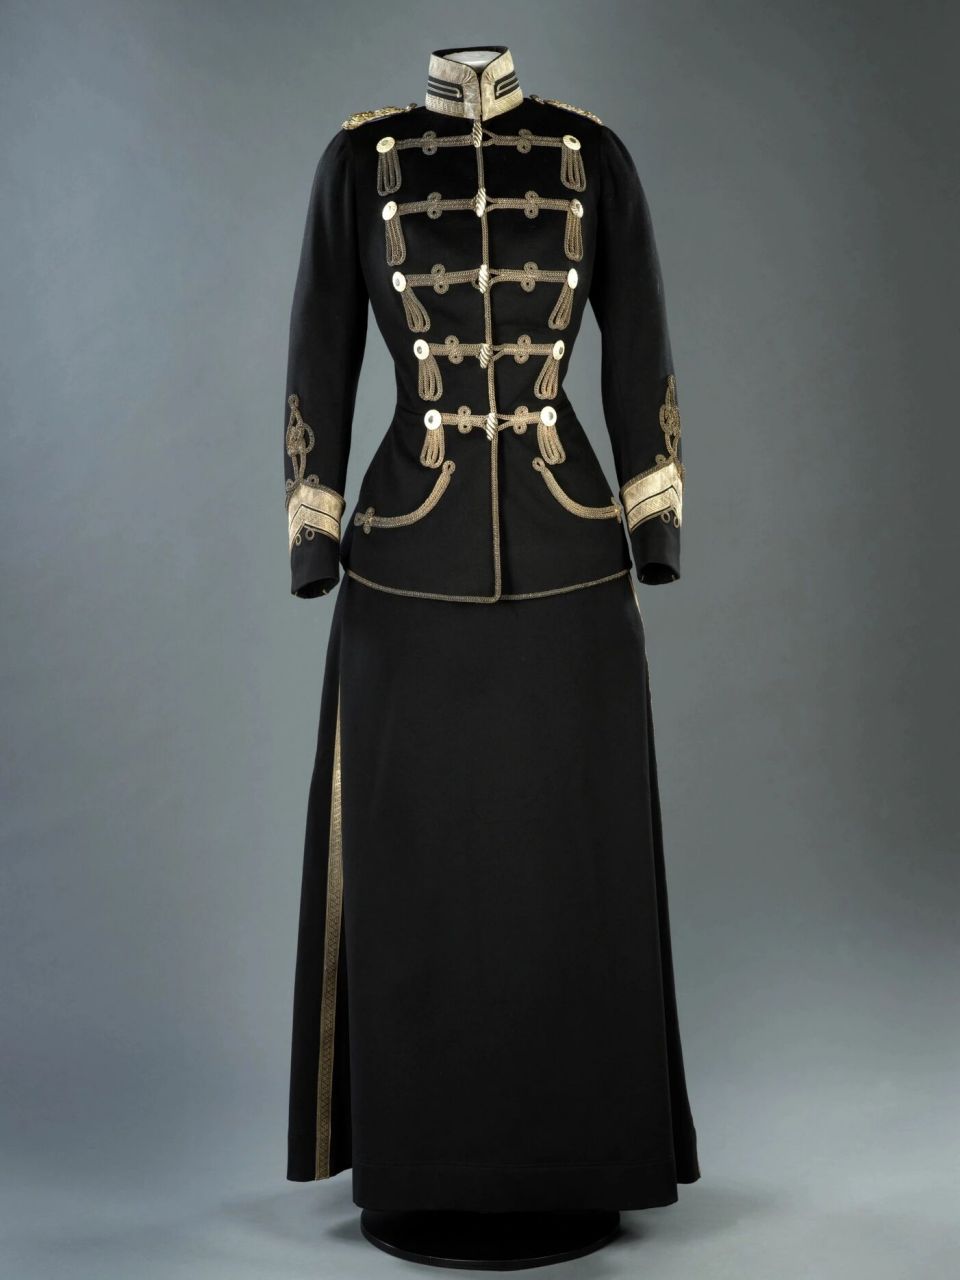 定制的骠骑兵礼服 维多利亚·路易斯公主定制的普鲁士骠骑兵军官礼服